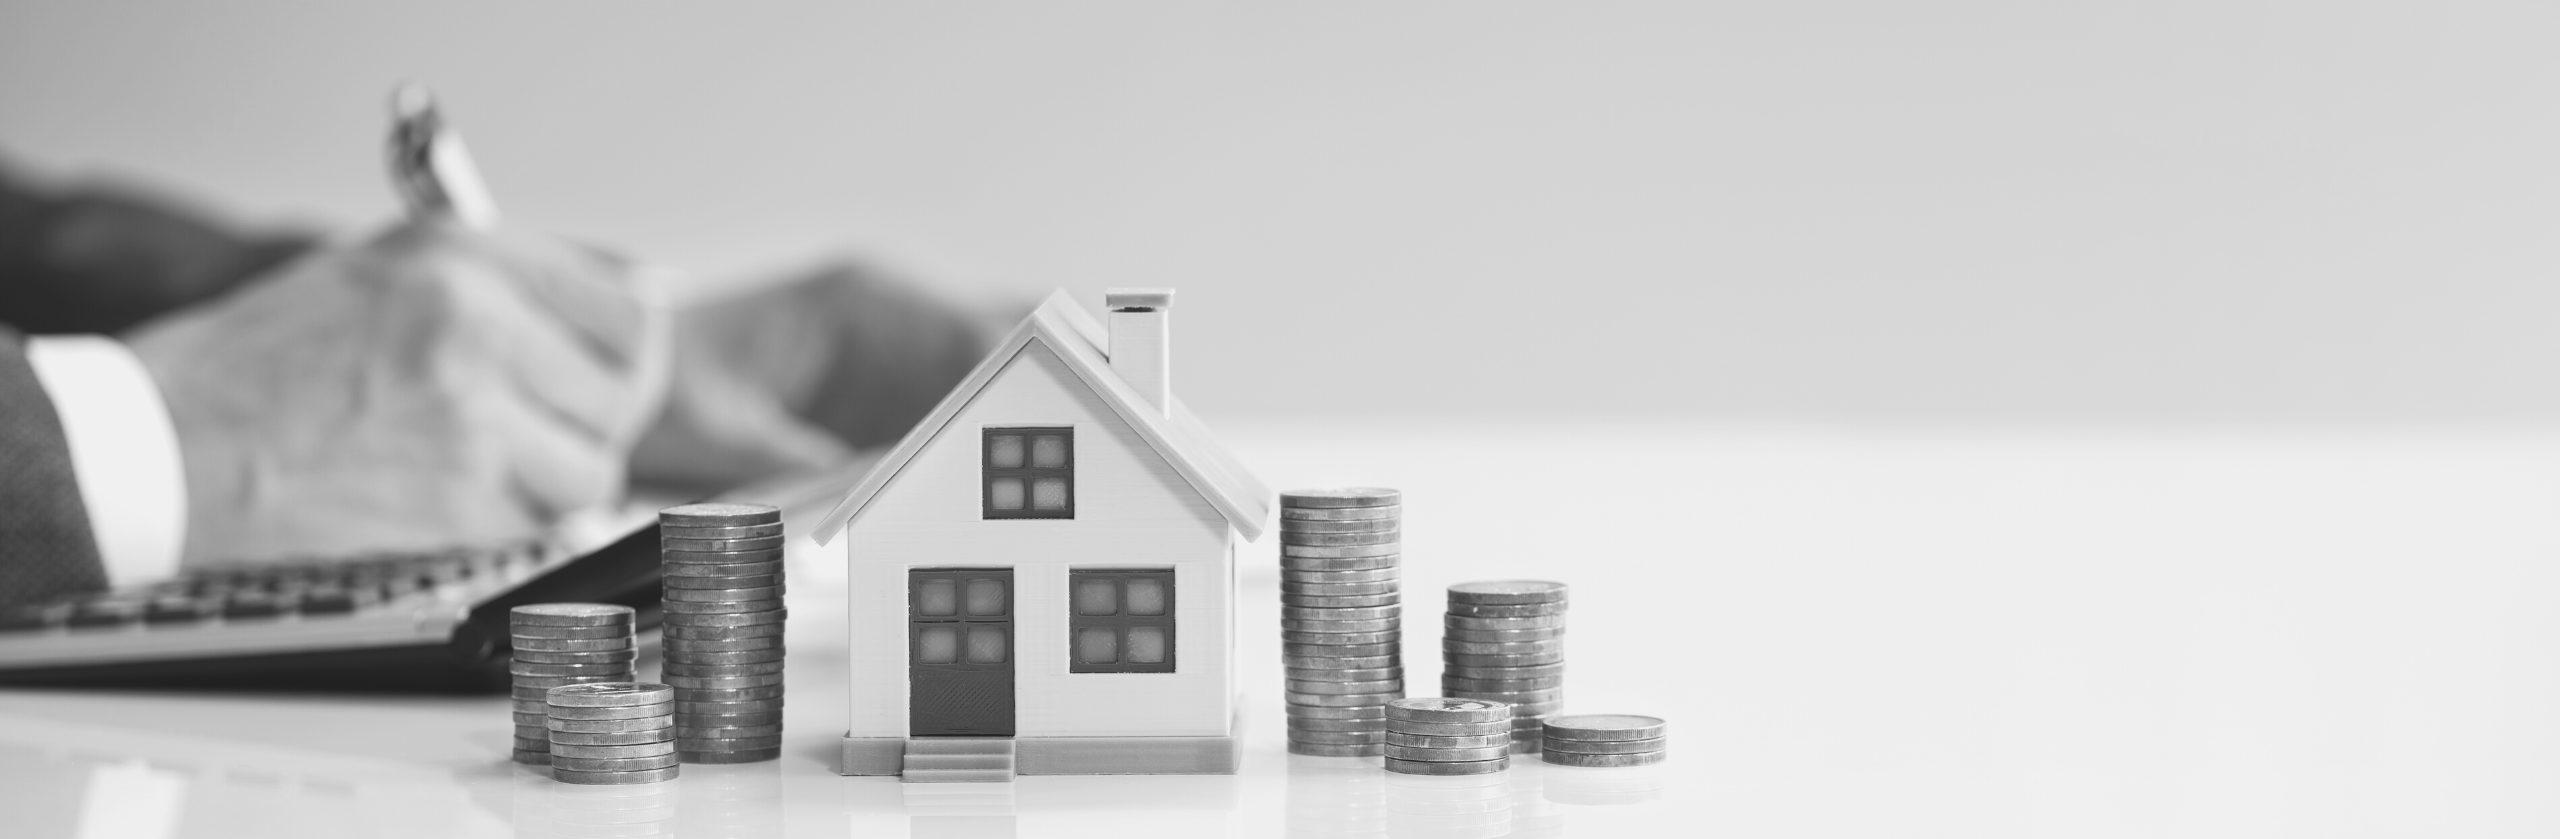 Immobilier les nouveaux prix et leur évolution à prévoir - Patrimoine Immobilier